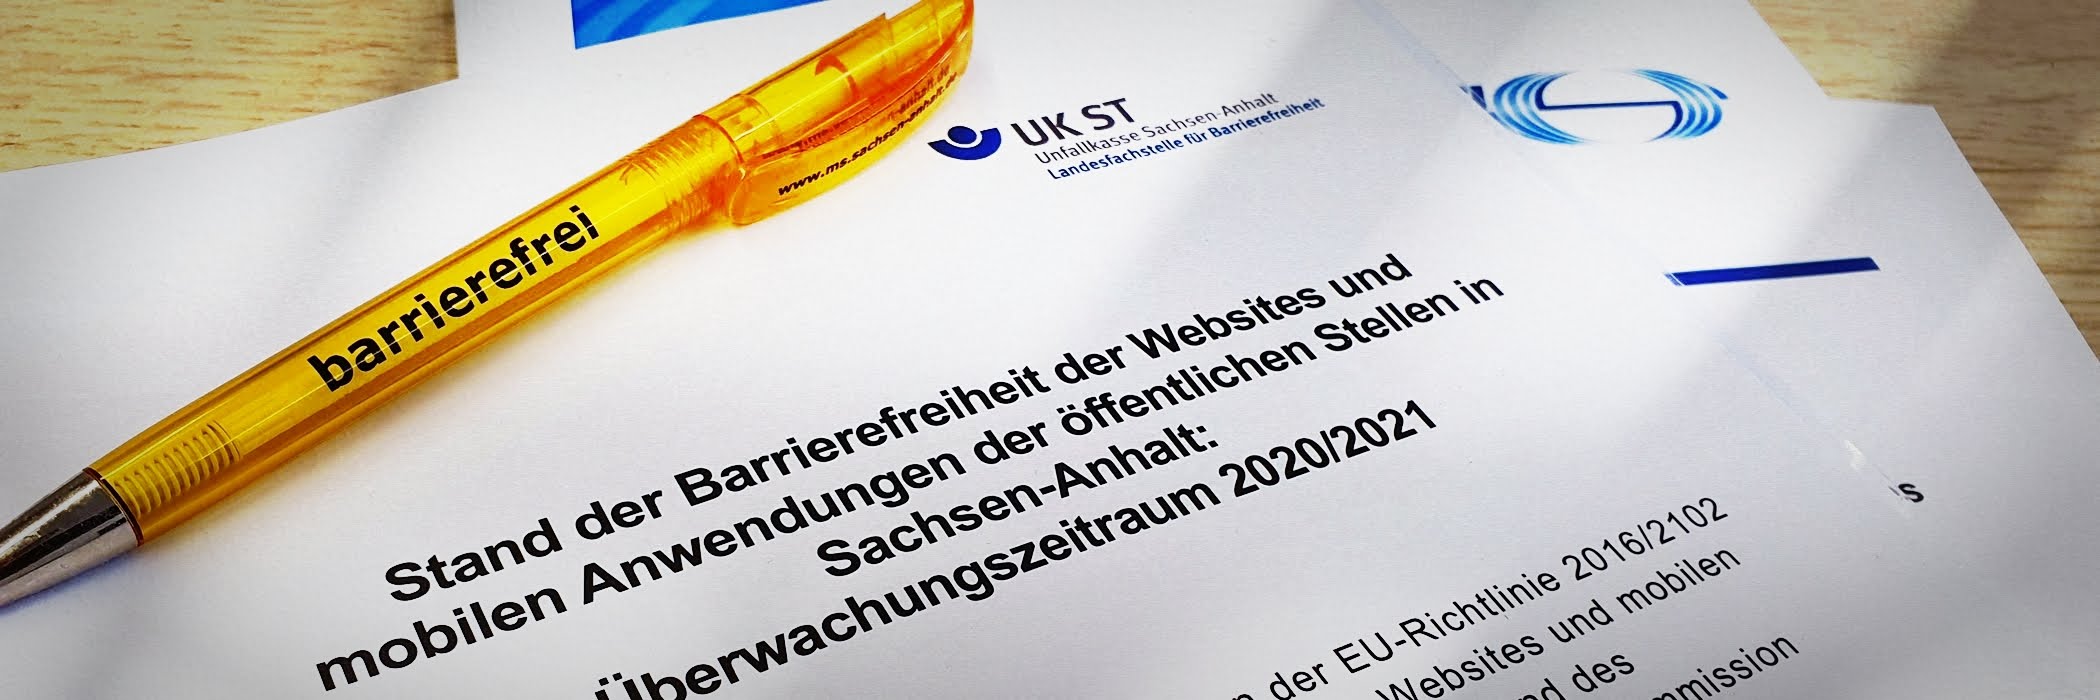 Stand der Barrierefreiheit der Websites und mobilen Anwendungen der öffentlichen Stellen in Sachsen-Anhalt: Überwachungszeitraum 2020/2021“. Darauf liegt ein gelber Kugelschreiber mit dem Wort „barrierefrei".